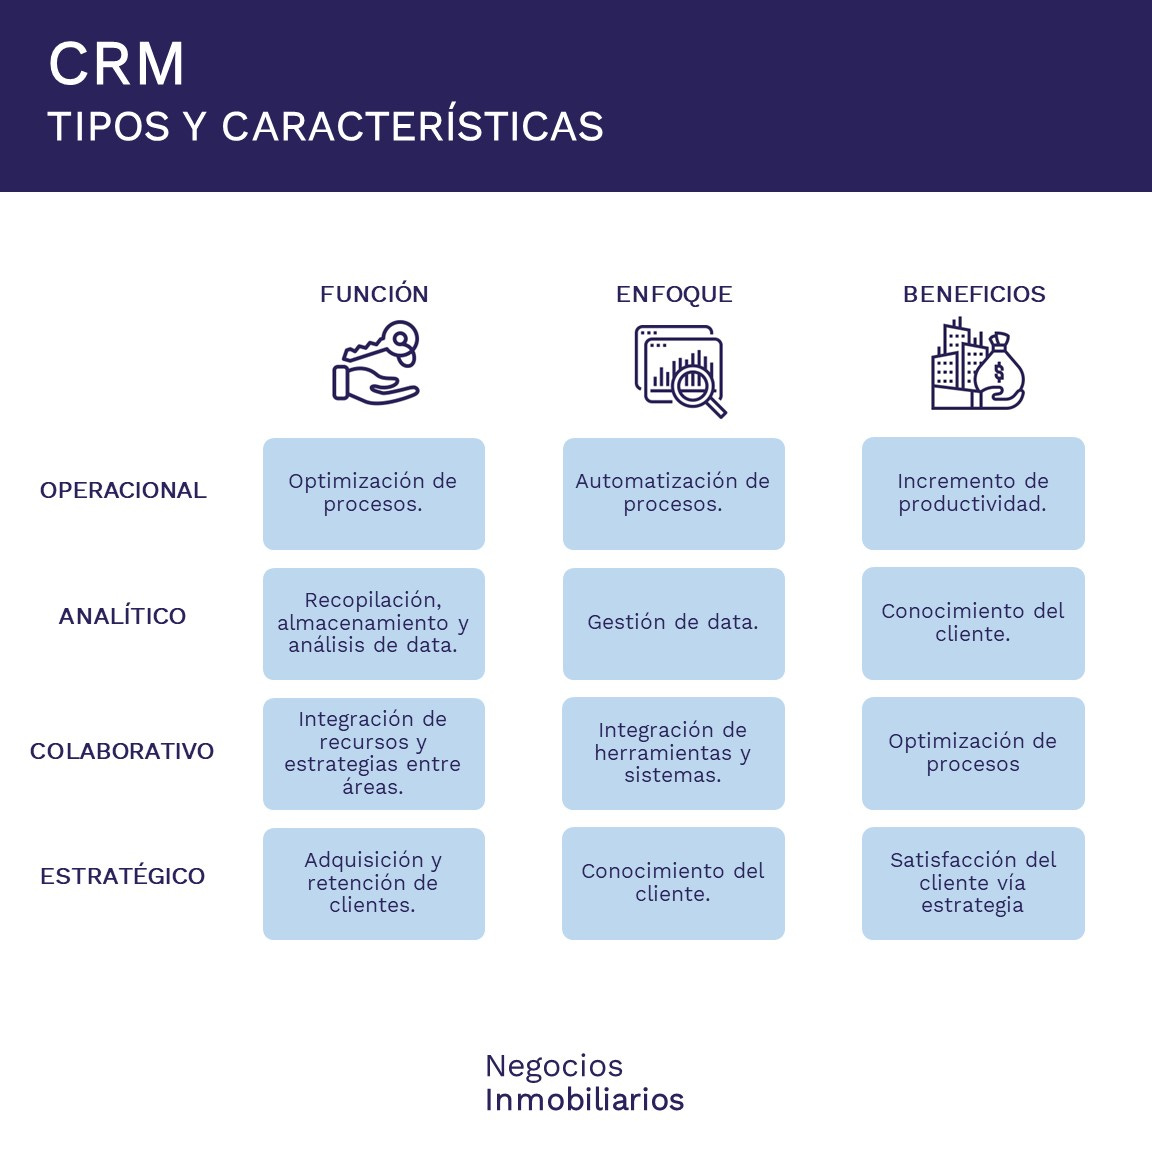 CRM - Tipos y características